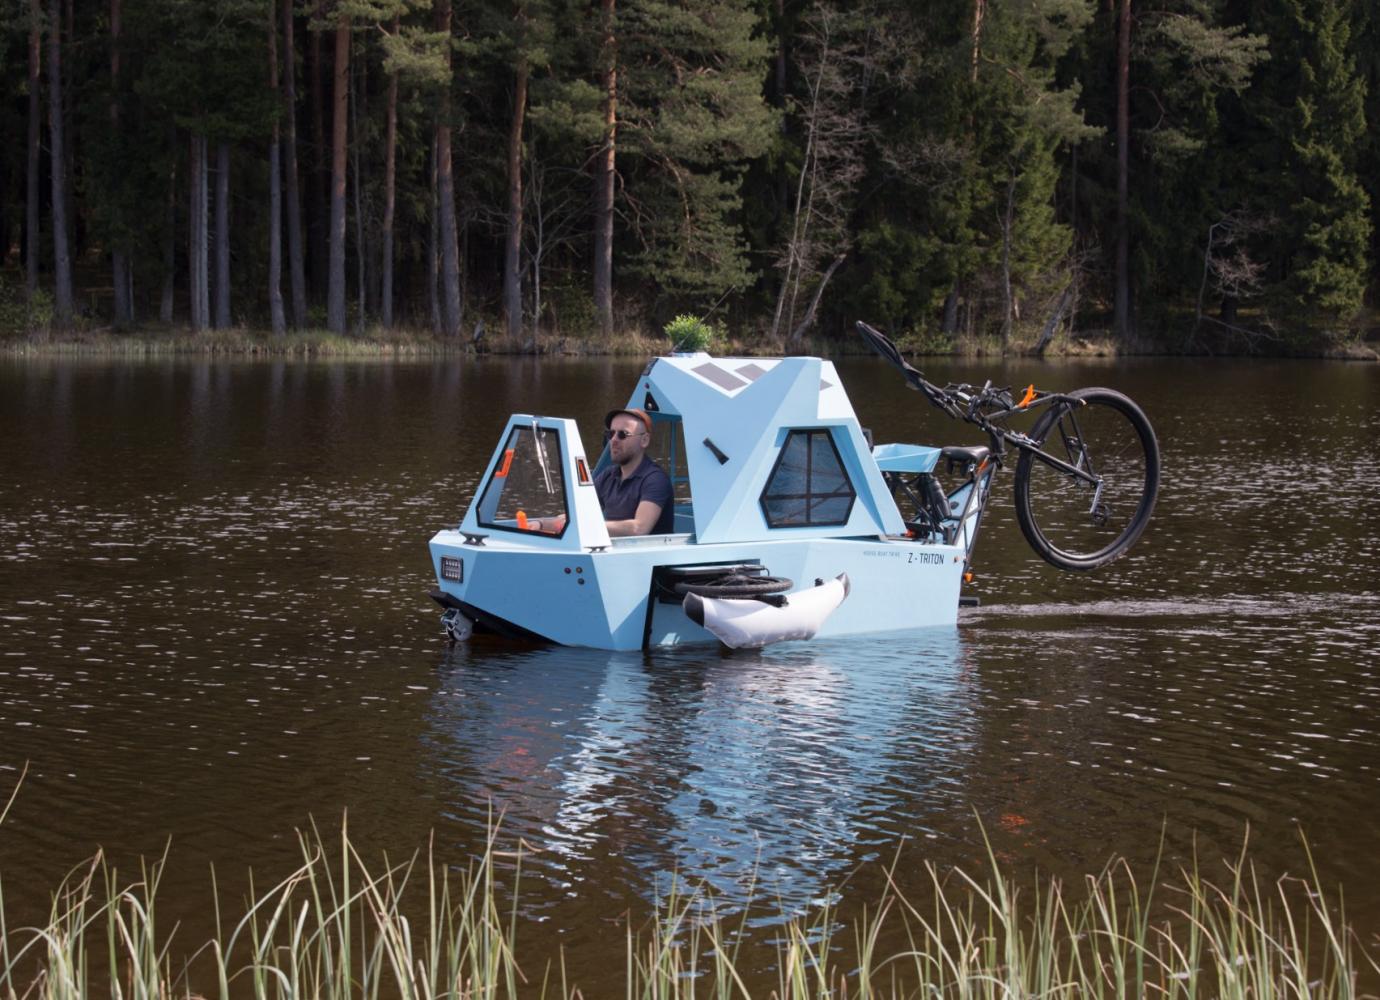 Z-Triton: E-Trike, Boot und Mini-Wohnwagen in einem - Pedelecs und E-Bikes